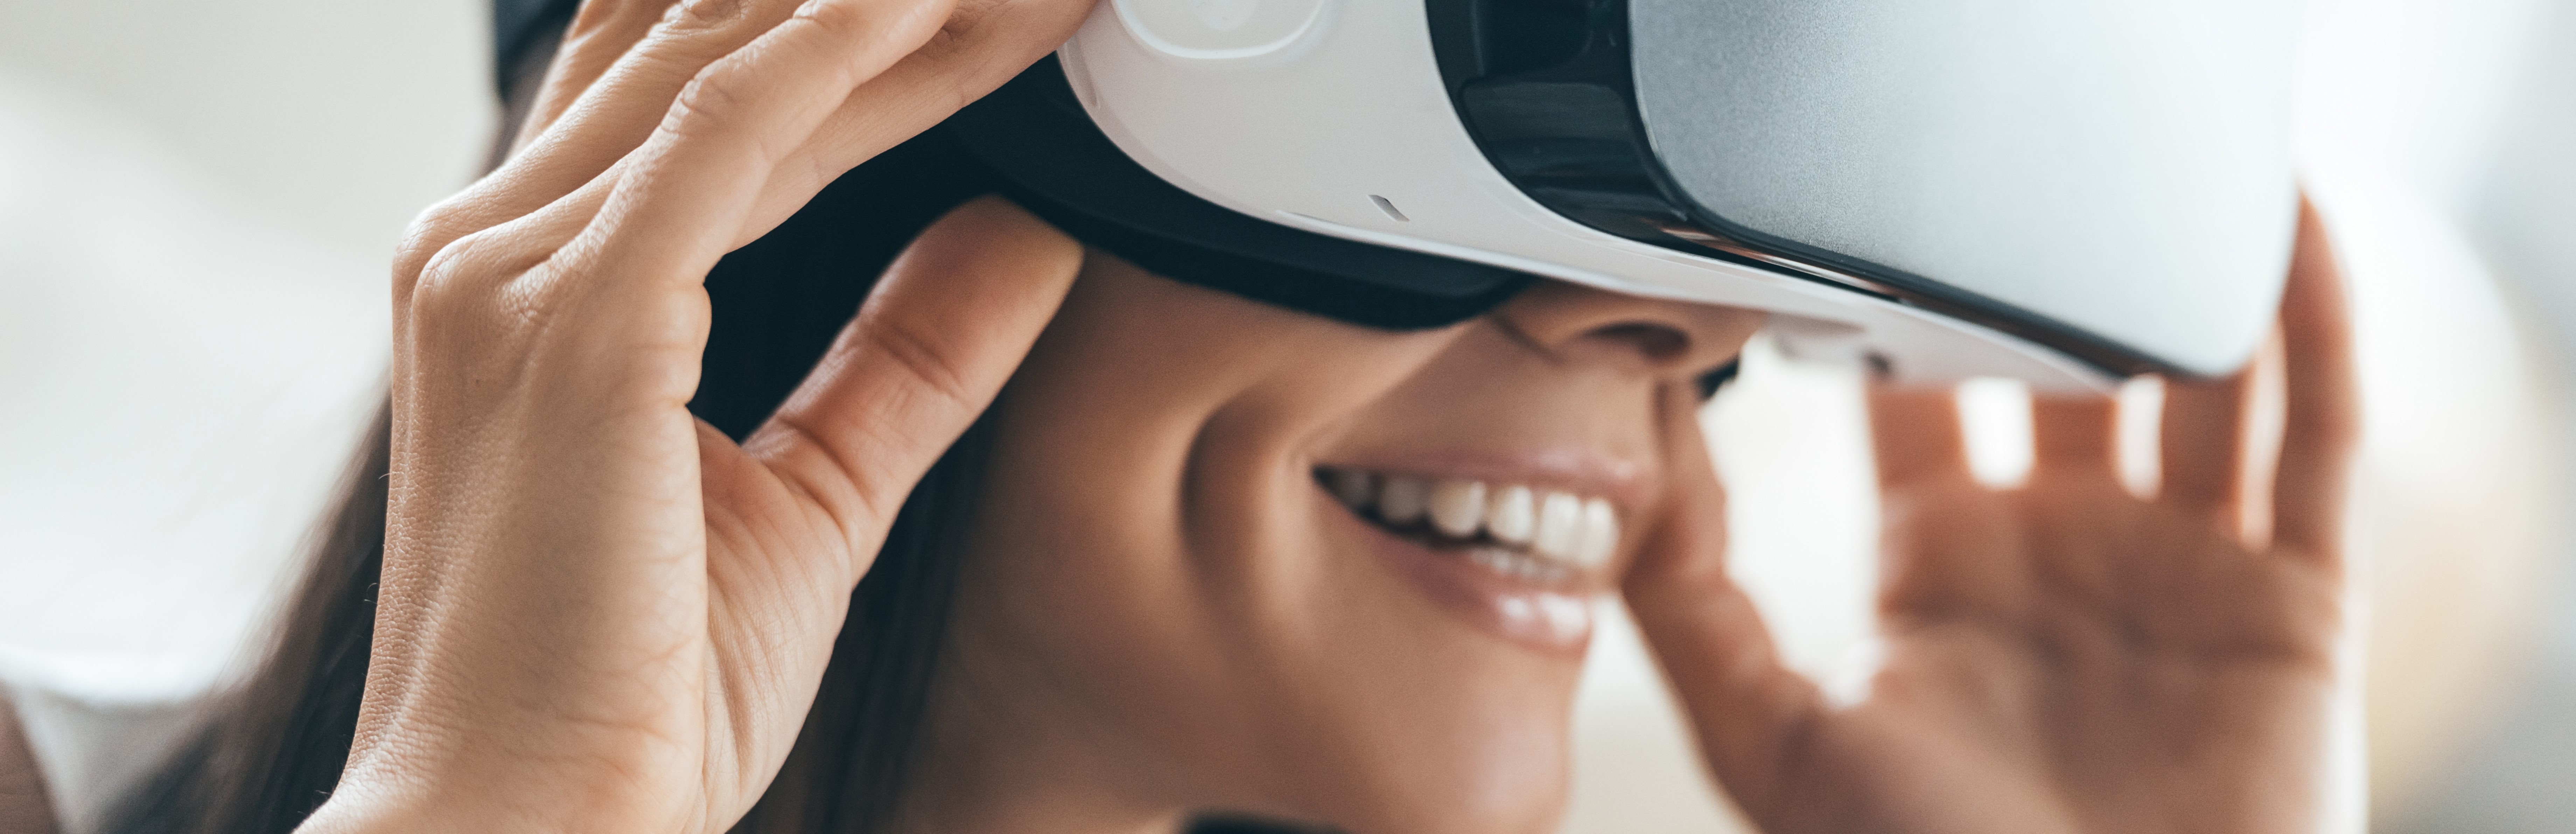 VR - Virtual tour